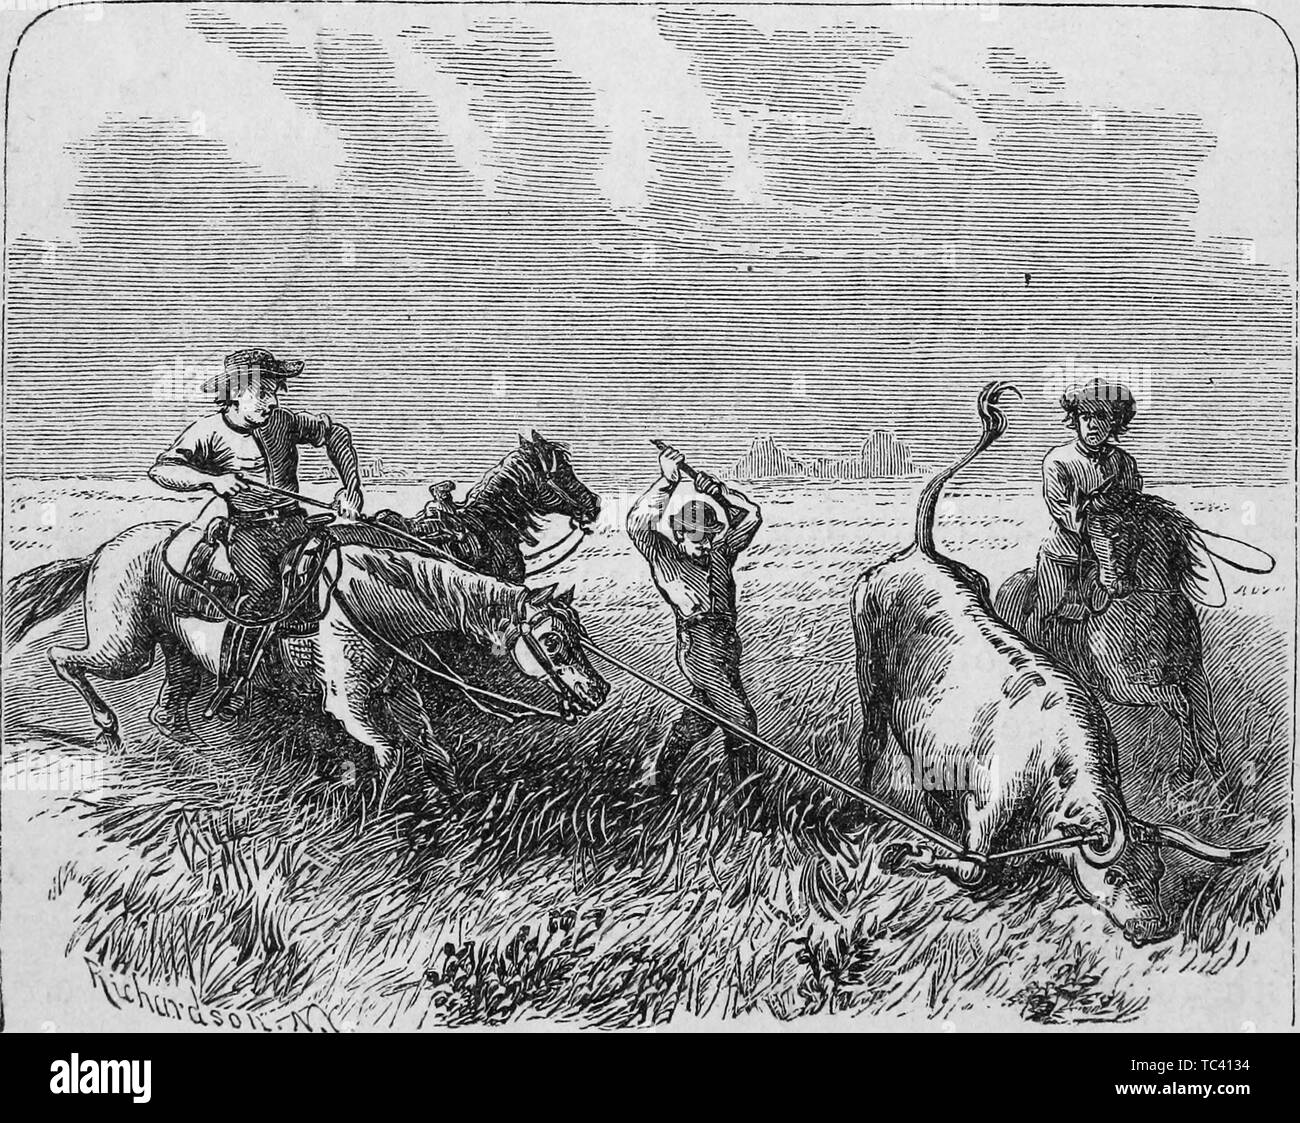 Gravure de cowboys marque un bétail, du livre "Brève histoire du Texas à partir de sa première transaction à laquelle est annexée la constitution de l'état' de De Witt Clinton Baker, 1873. Avec la permission de Internet Archive. () Banque D'Images